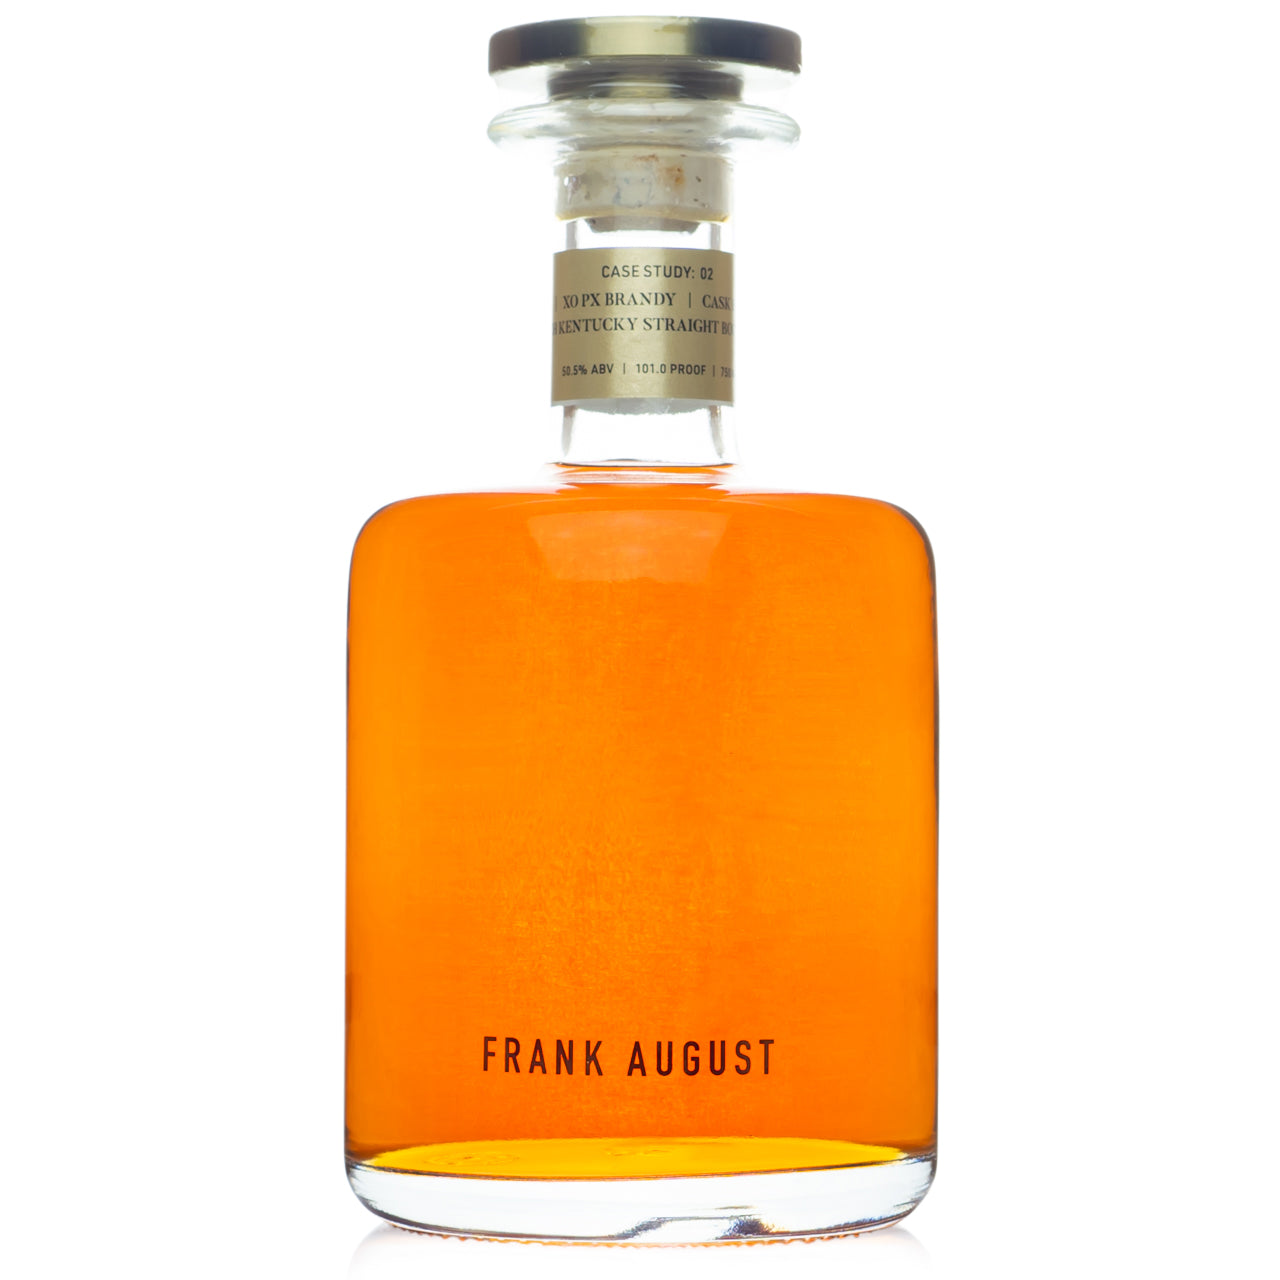 Frank August Case Study: 02 XO PX Brandy Cask Finished Bourbon